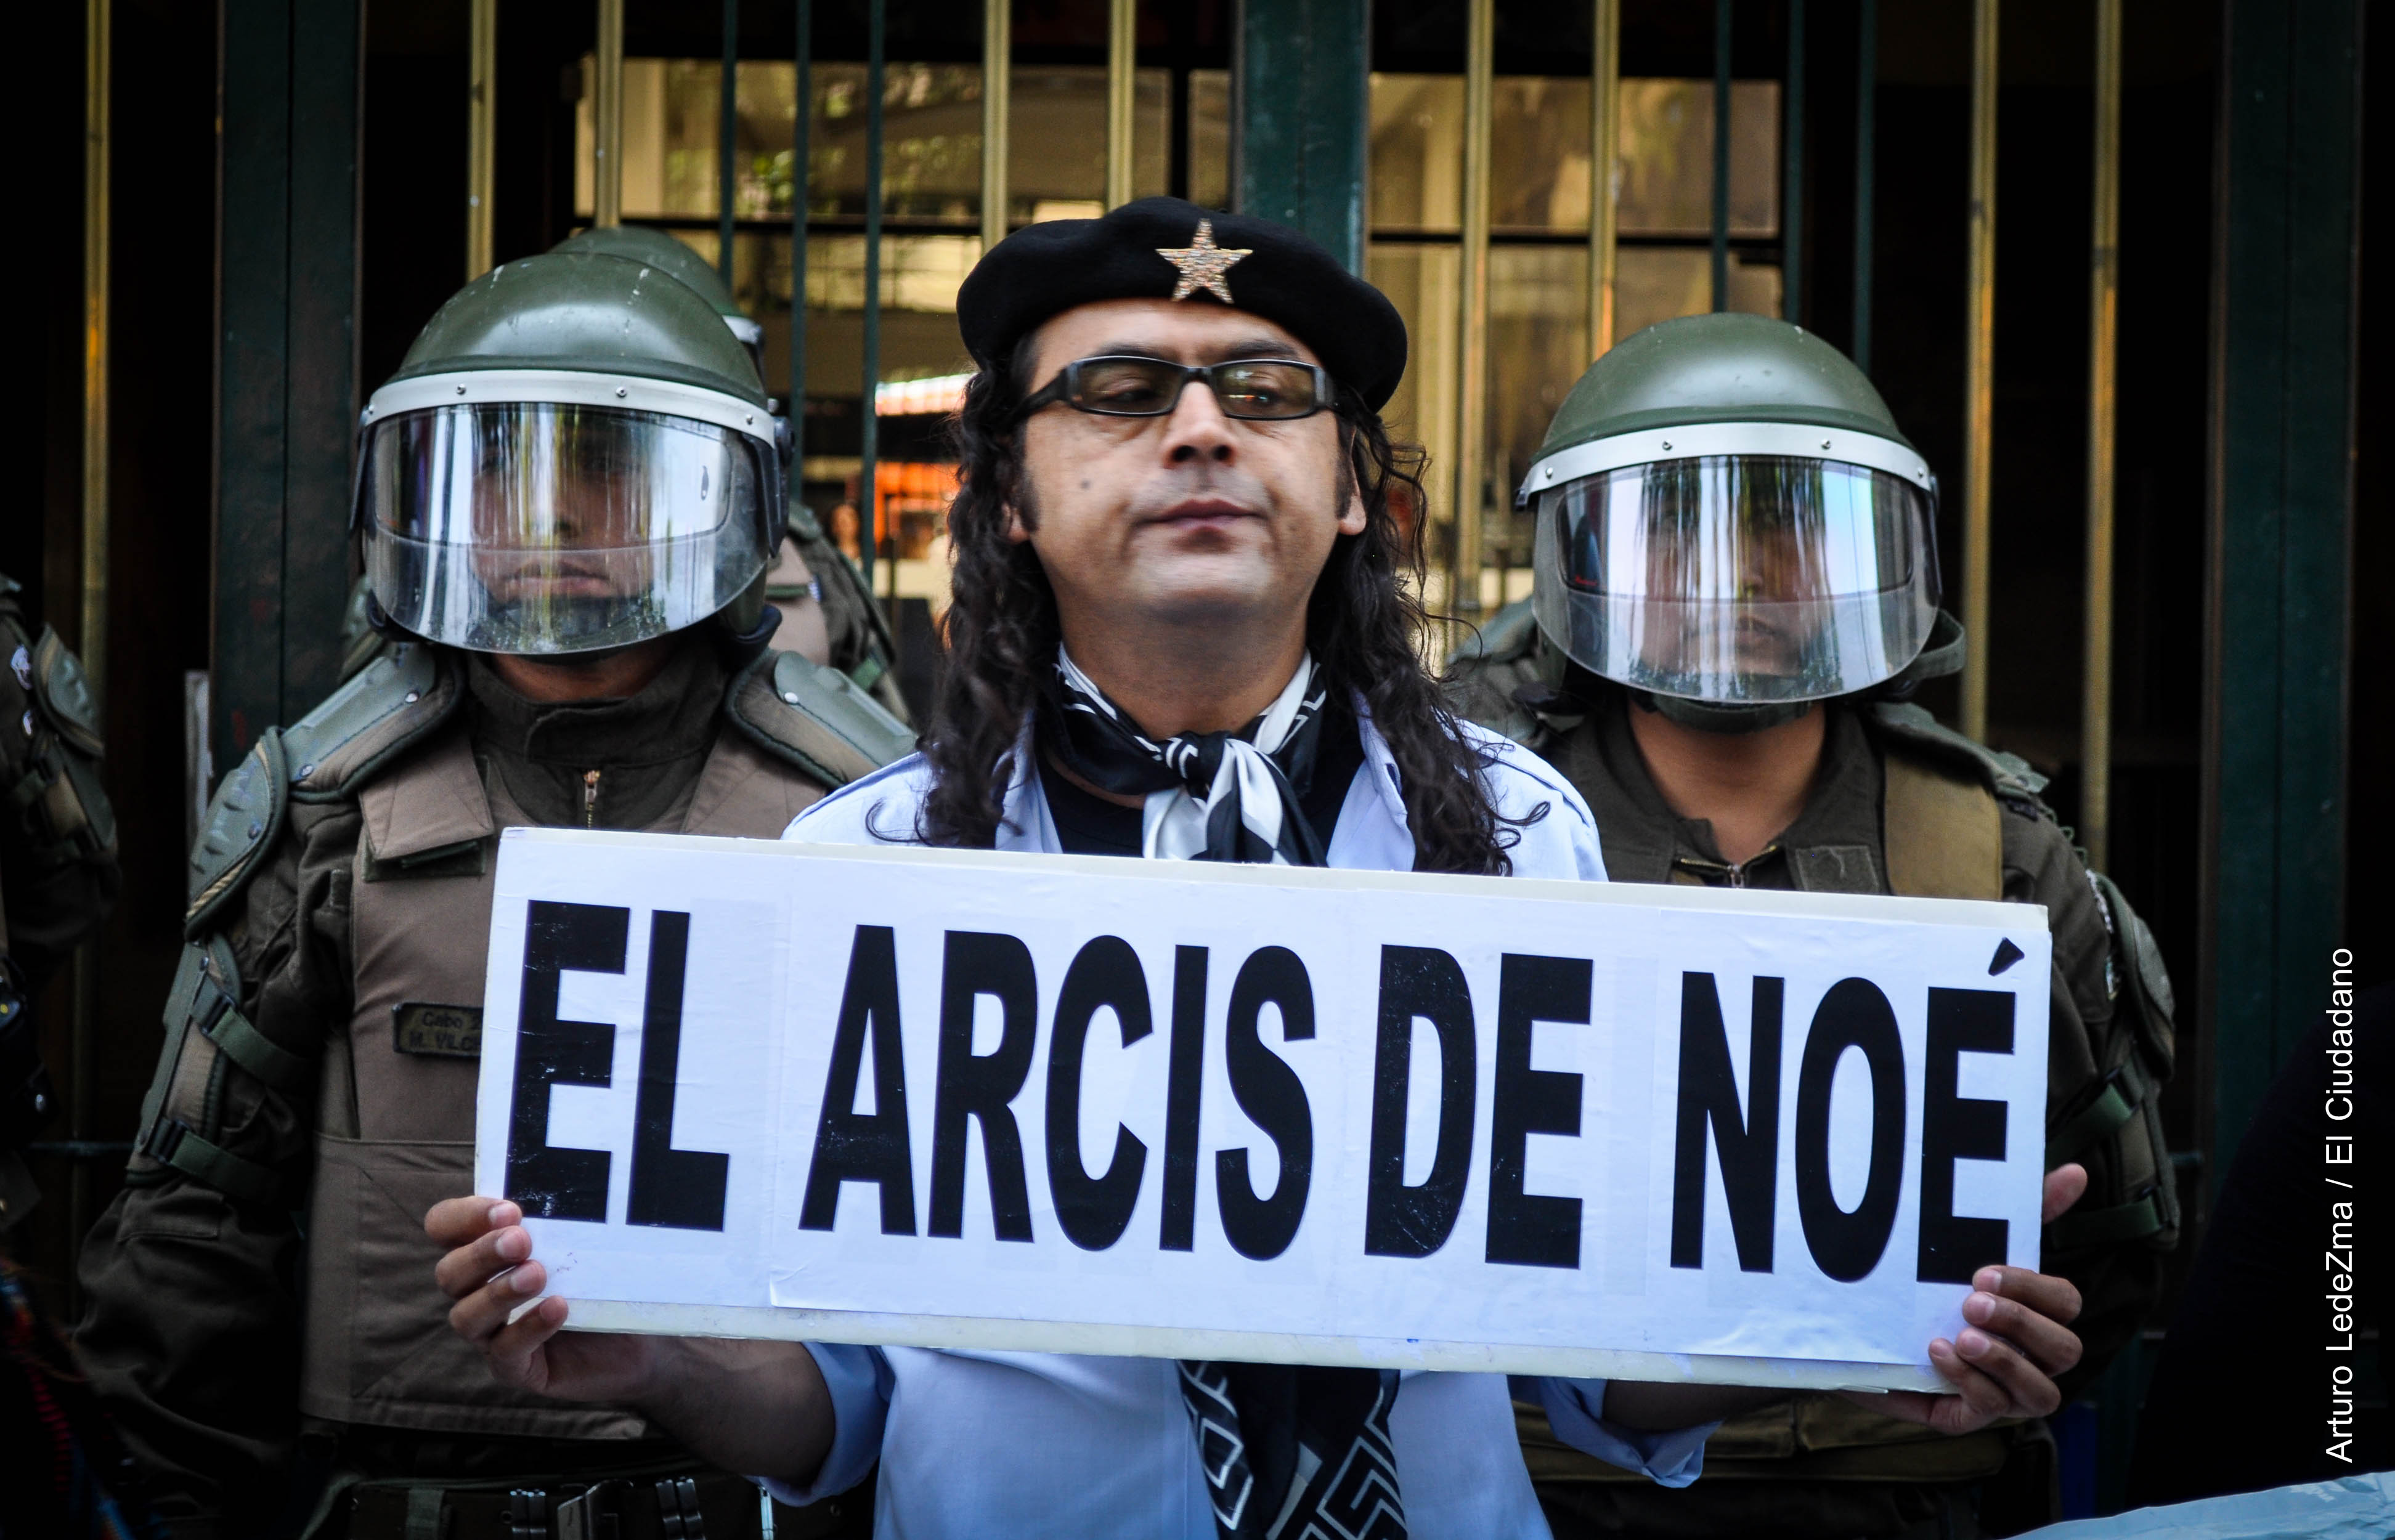 Universidad Arcis en lucha consigue compromiso oficial del gobierno, pero sufre nueva represión